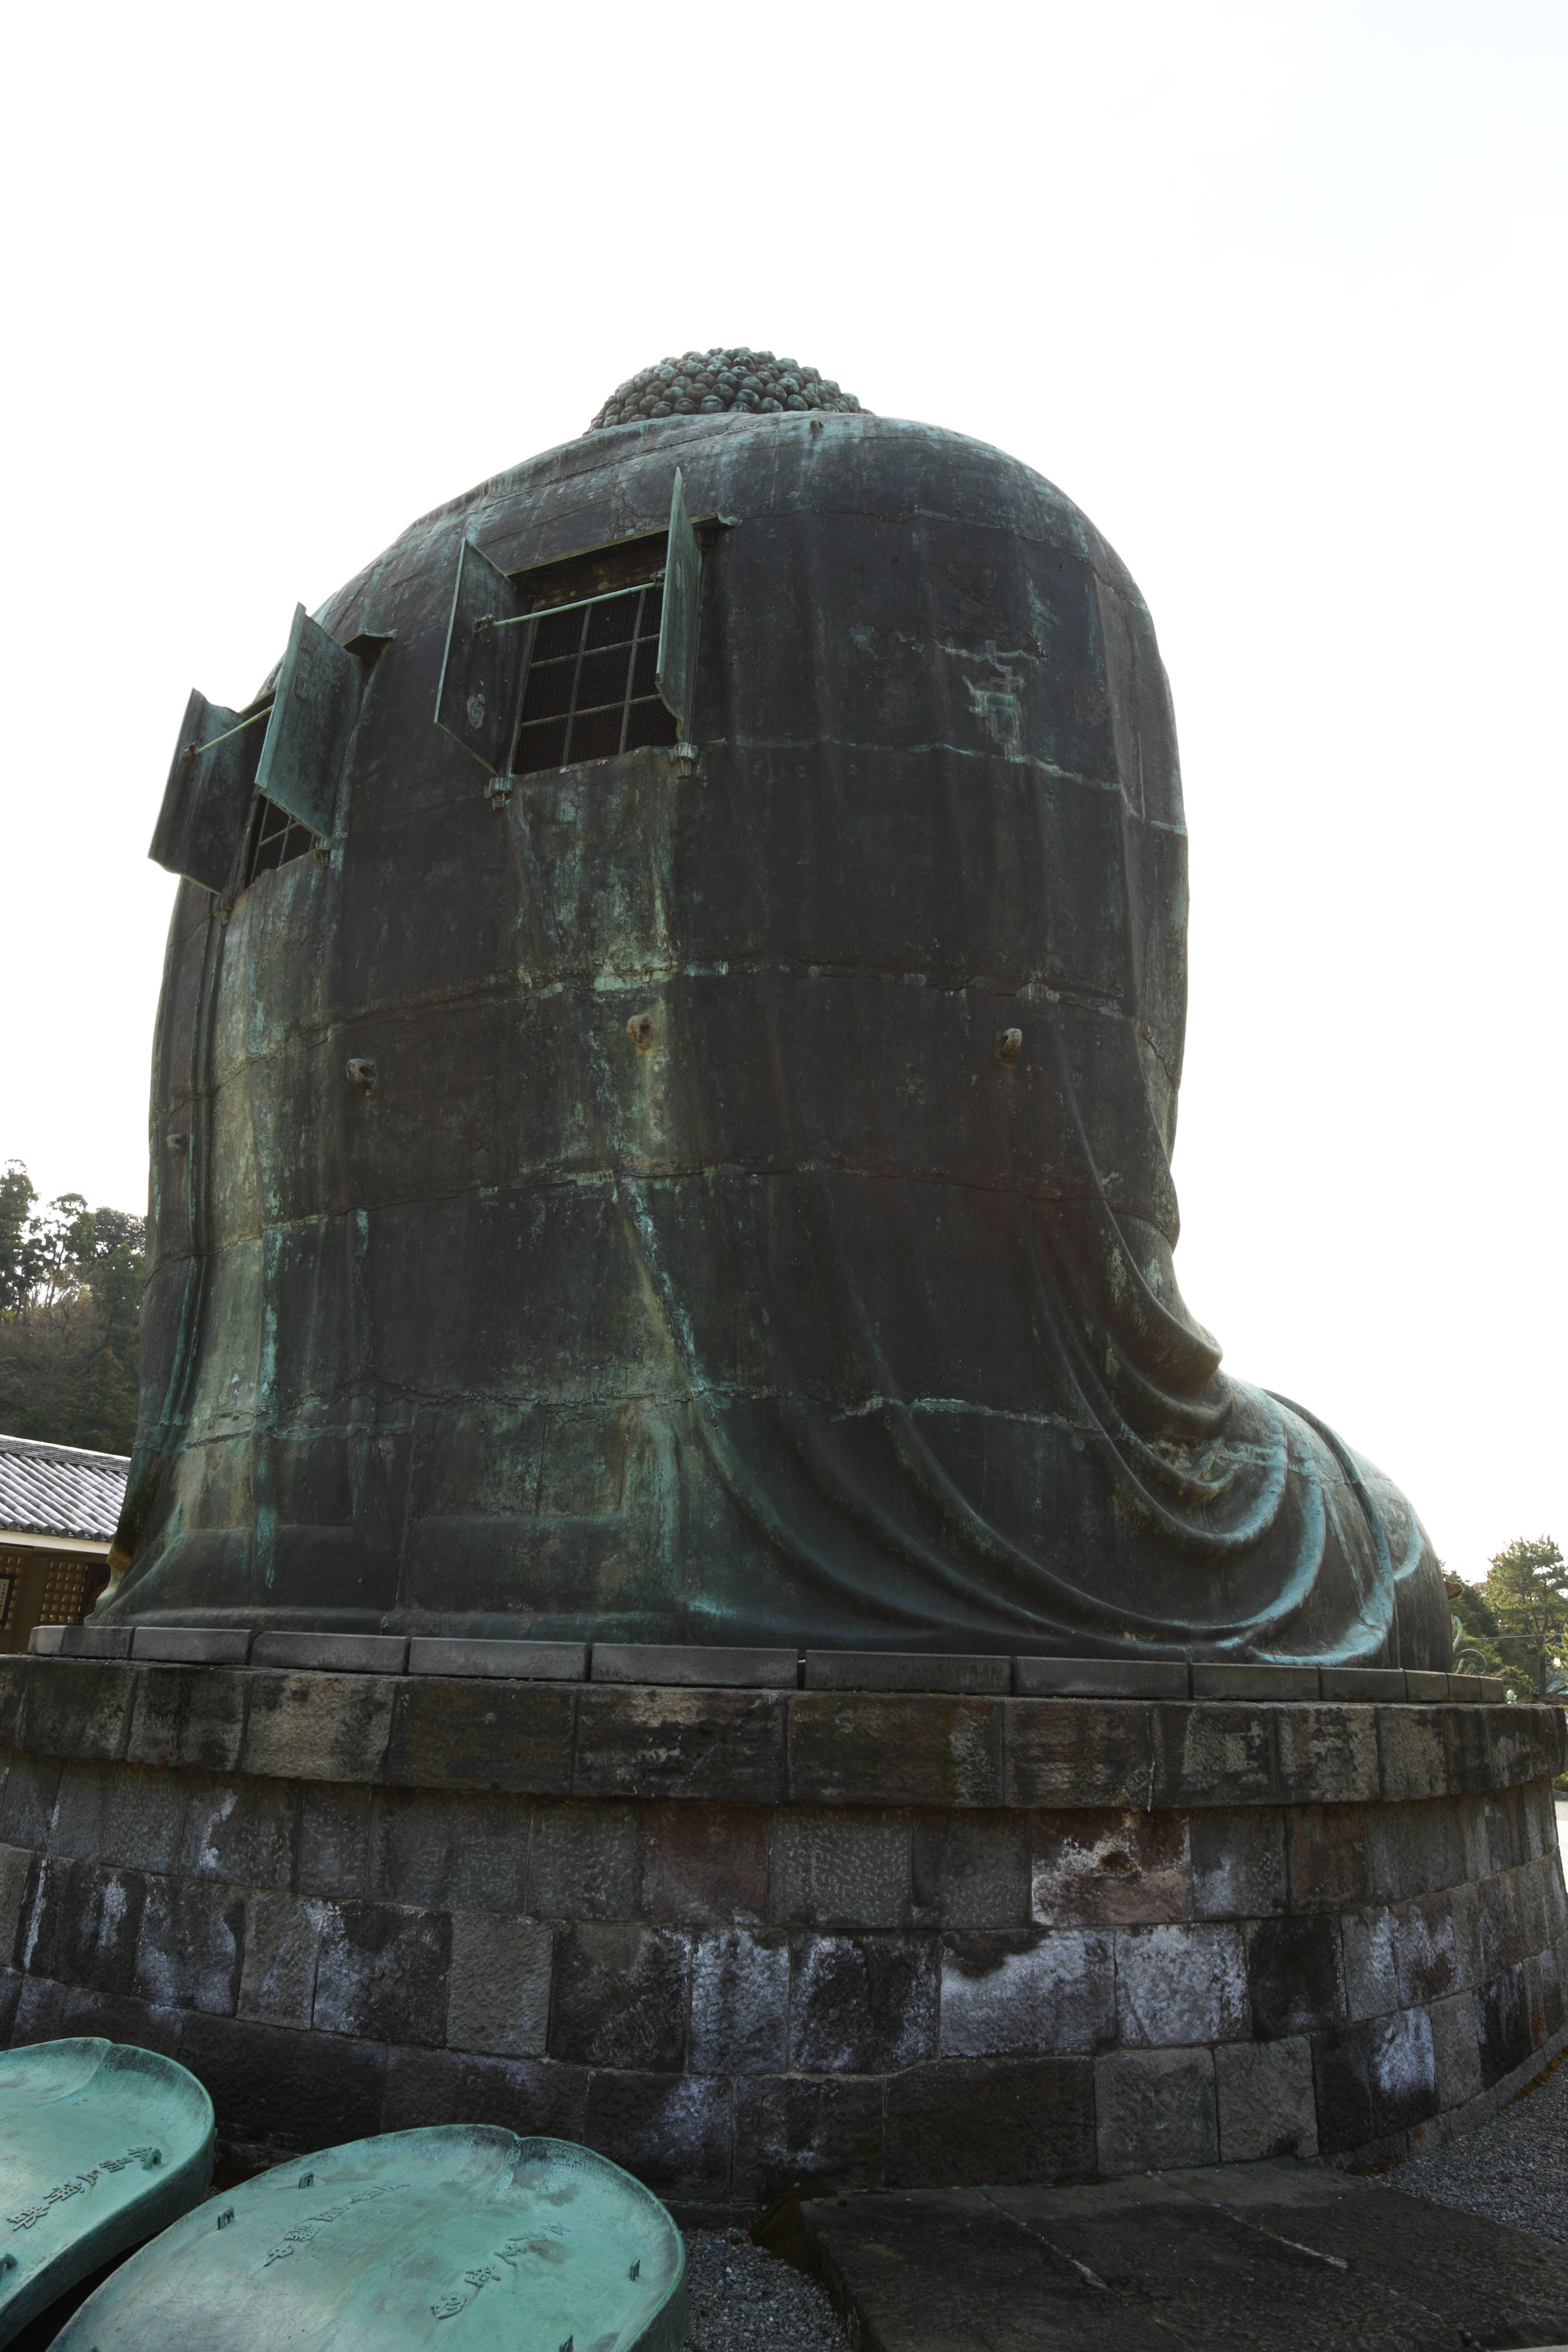 fotografia, materiale, libero il panorama, dipinga, fotografia di scorta,Kamakura la grande statua di Budda, , , Soong disegna, Scultura di Buddismo